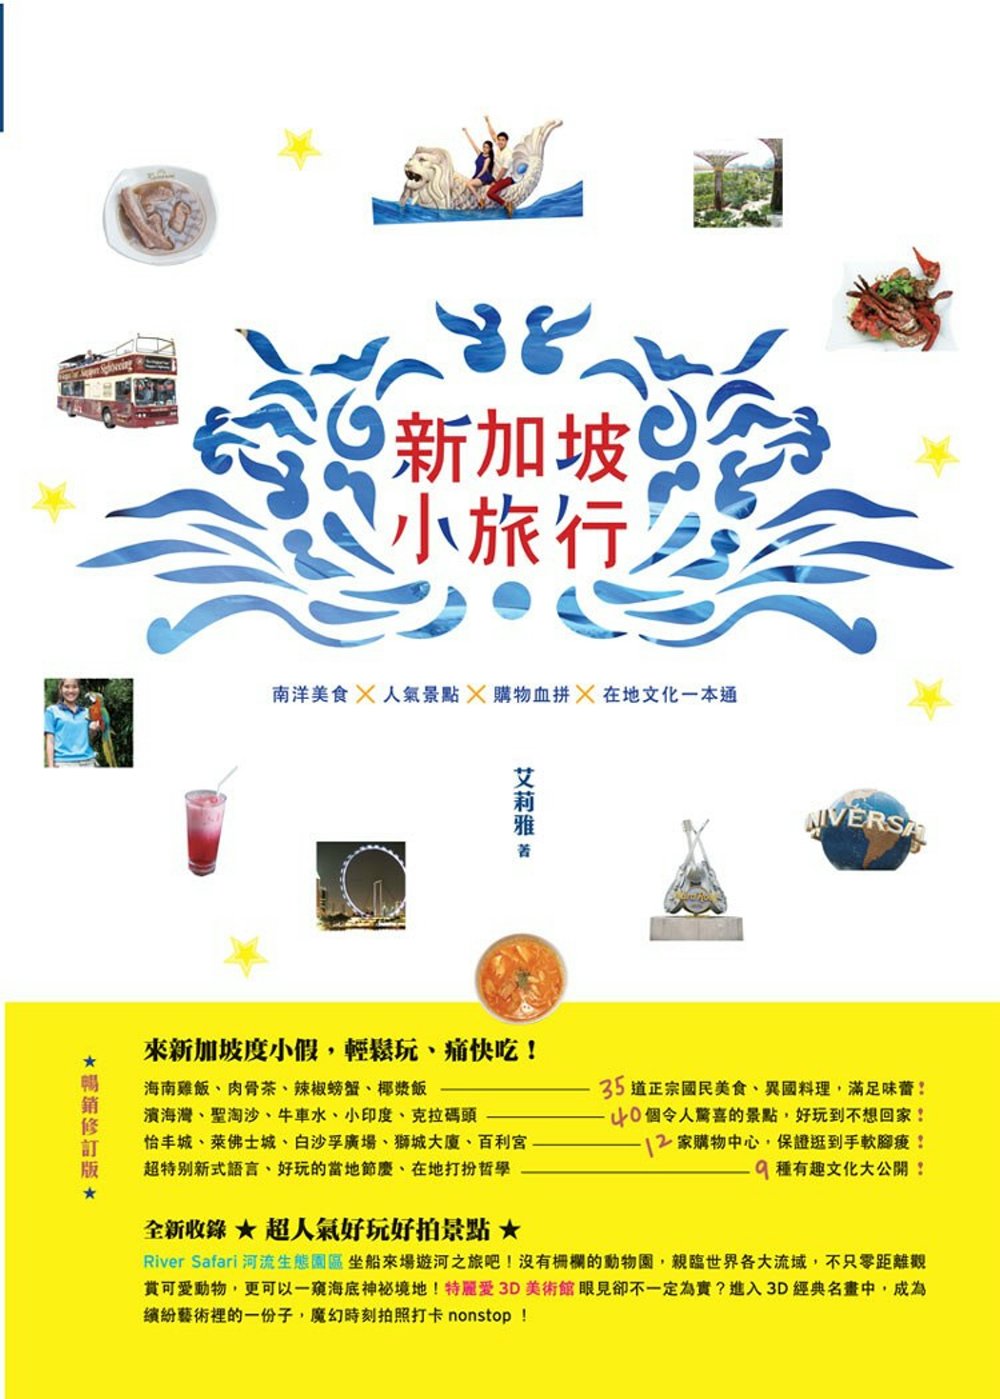 新加坡小旅行：南洋美食×人氣景點×購物血拚×在地文化一本通 暢銷修訂版